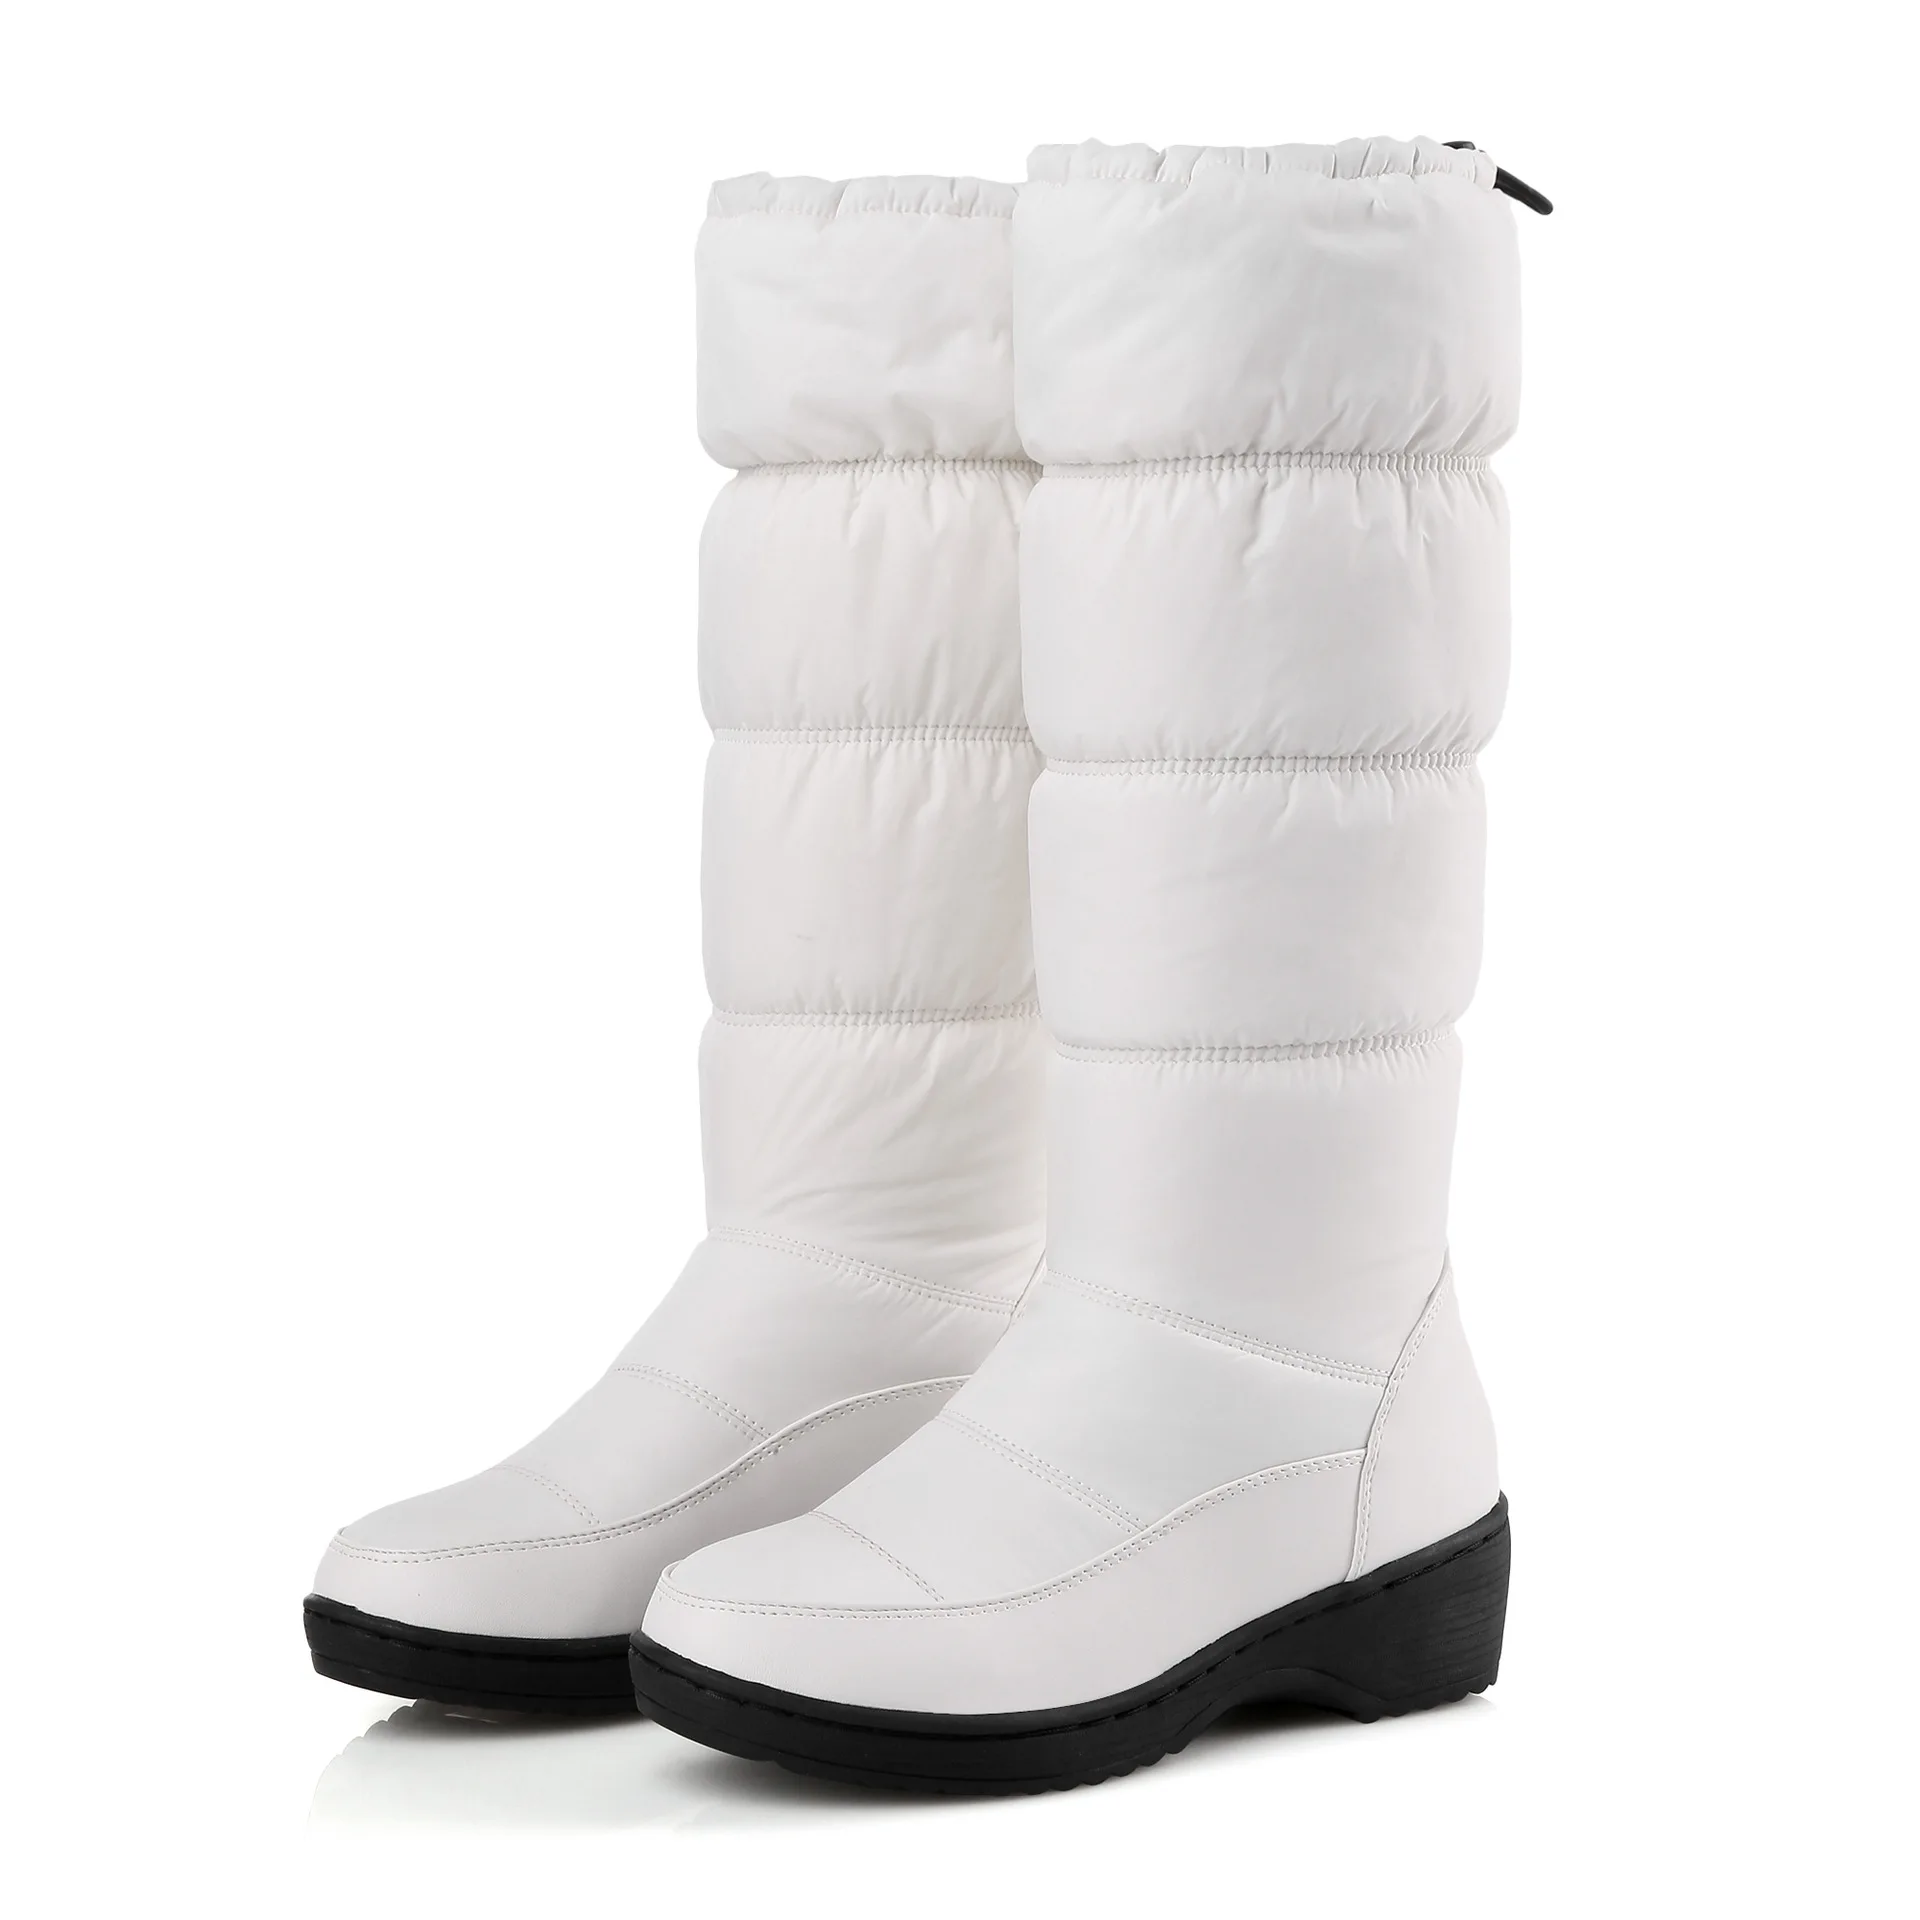 LTARTA зимние Для женщин обувь, теплые сапоги белого цвета обувь из материала на основе хлопка, с флисовой подкладкой, хлопковая плотная ботинки с мягкой подошвой сдобы торт снежные сапоги HX-85 - Цвет: white